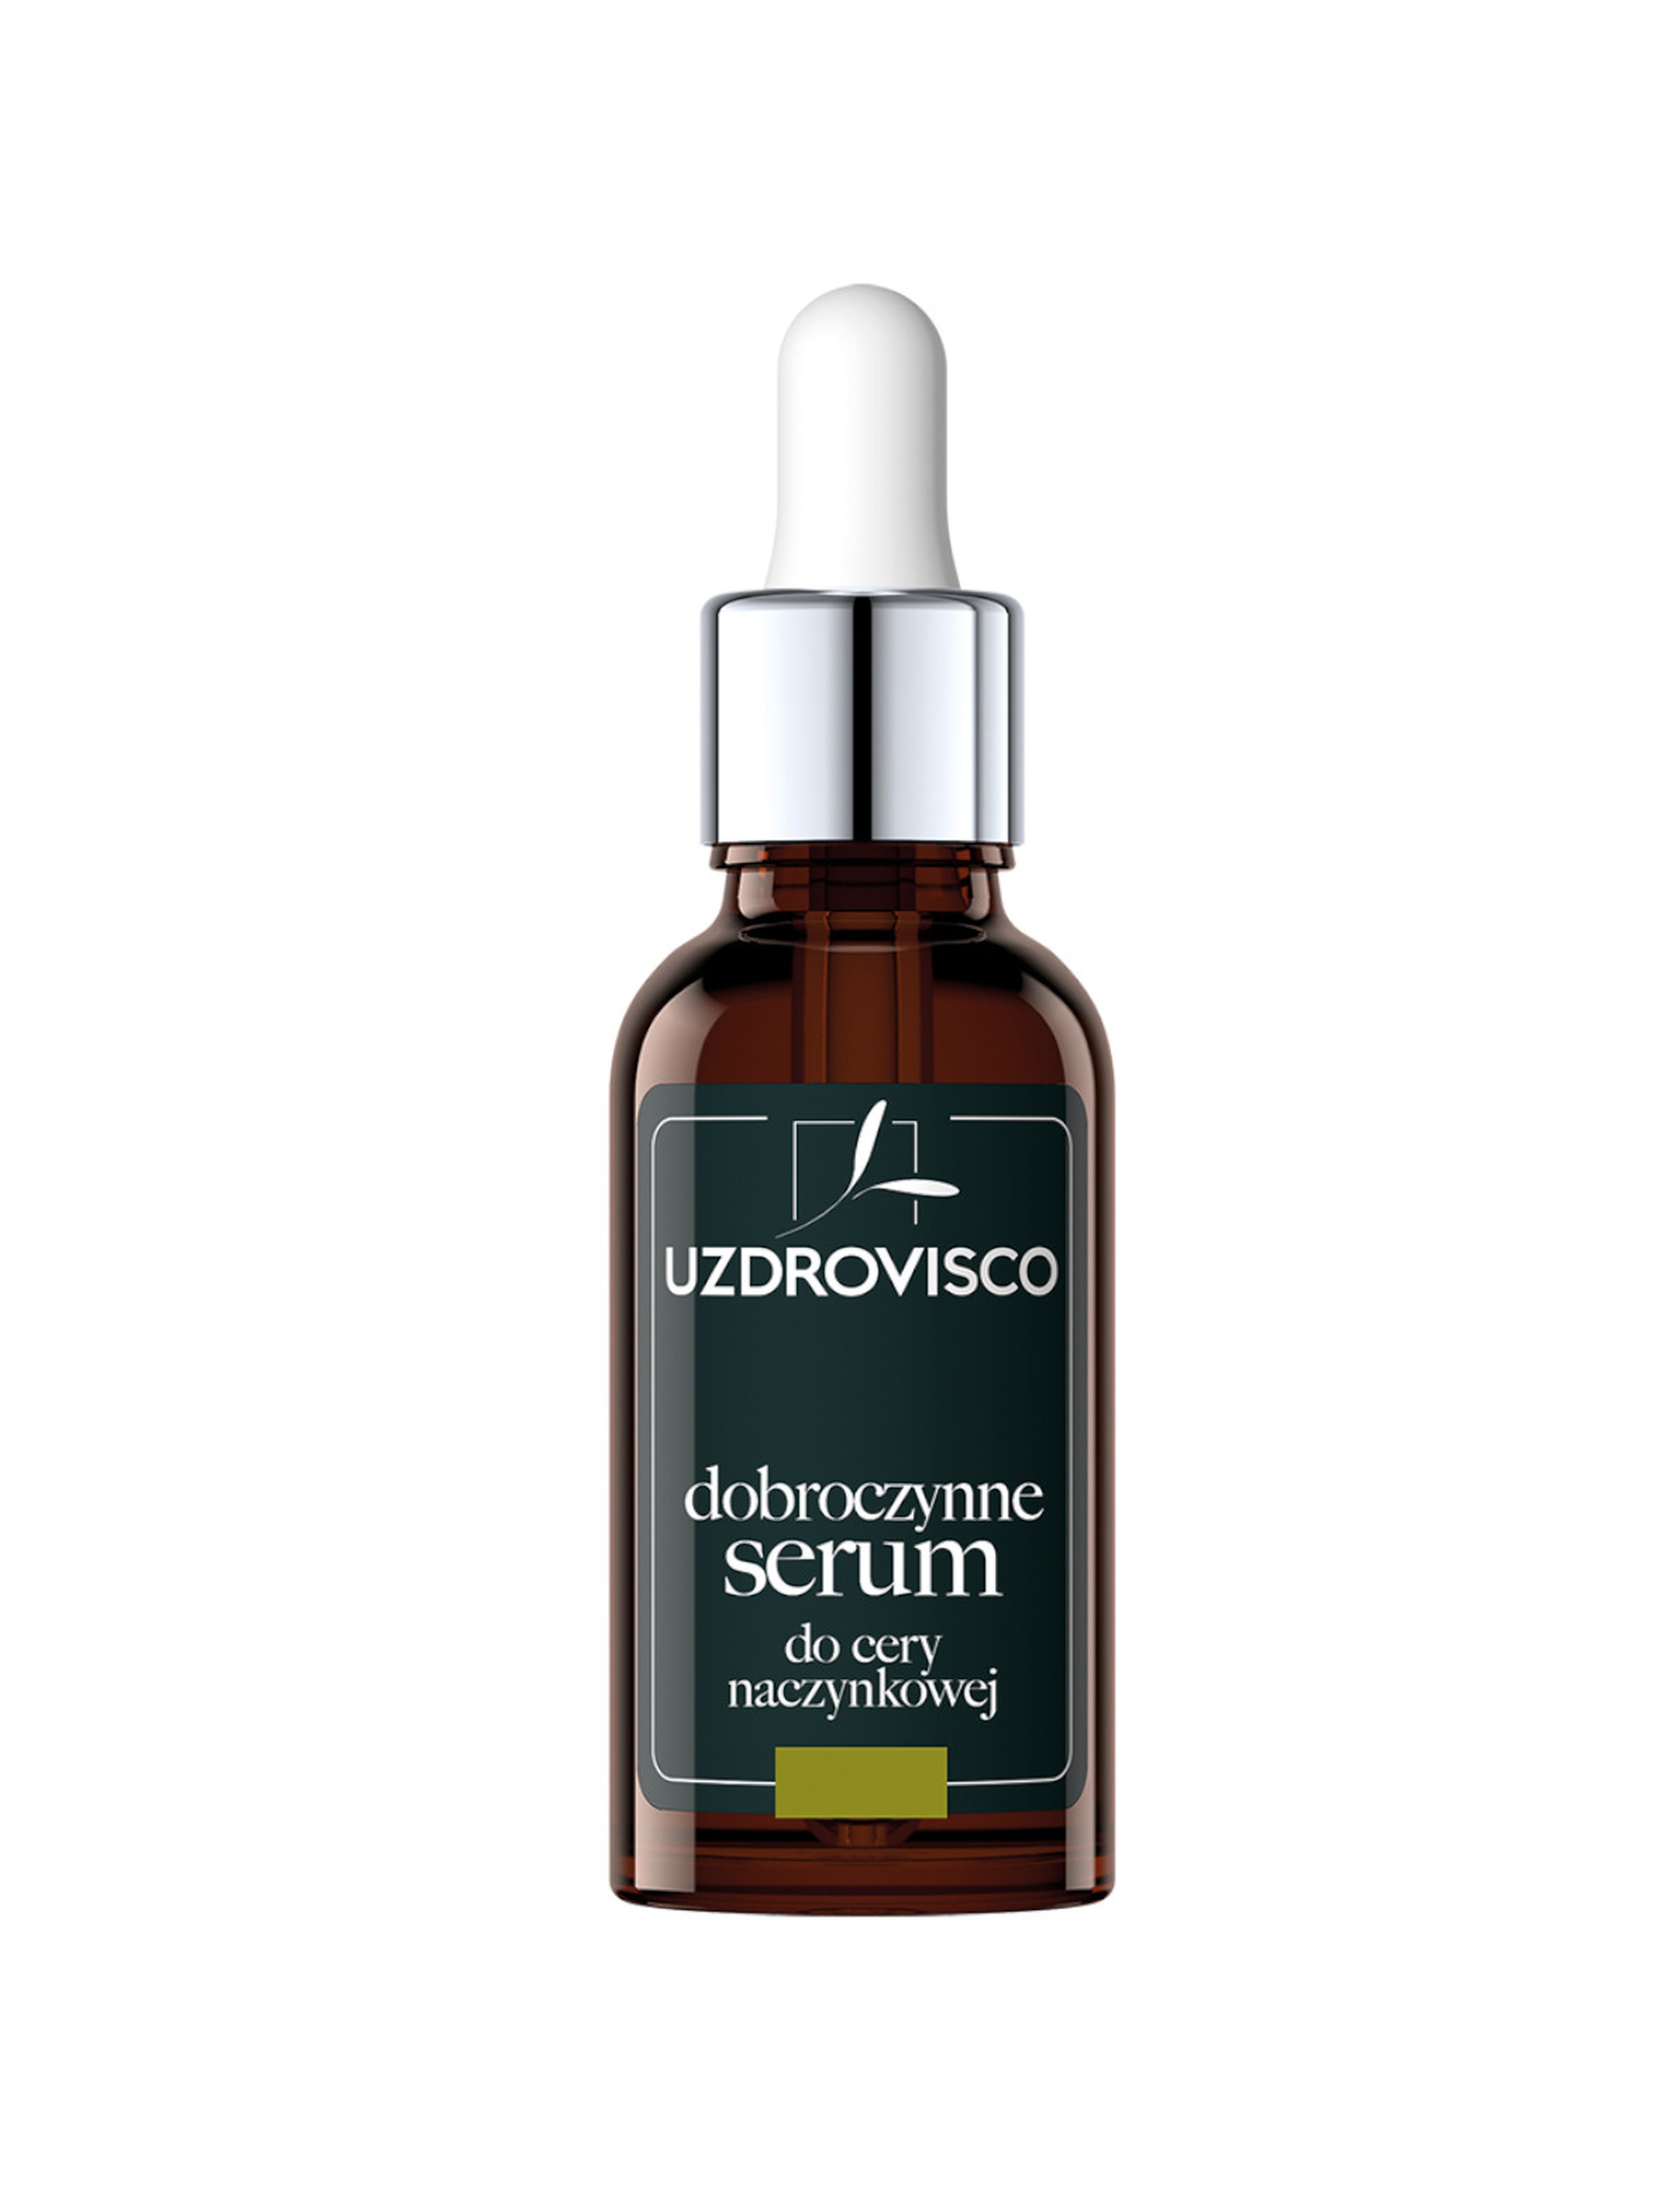 Dobroczynne serum do cery naczynkowej - 30 ml